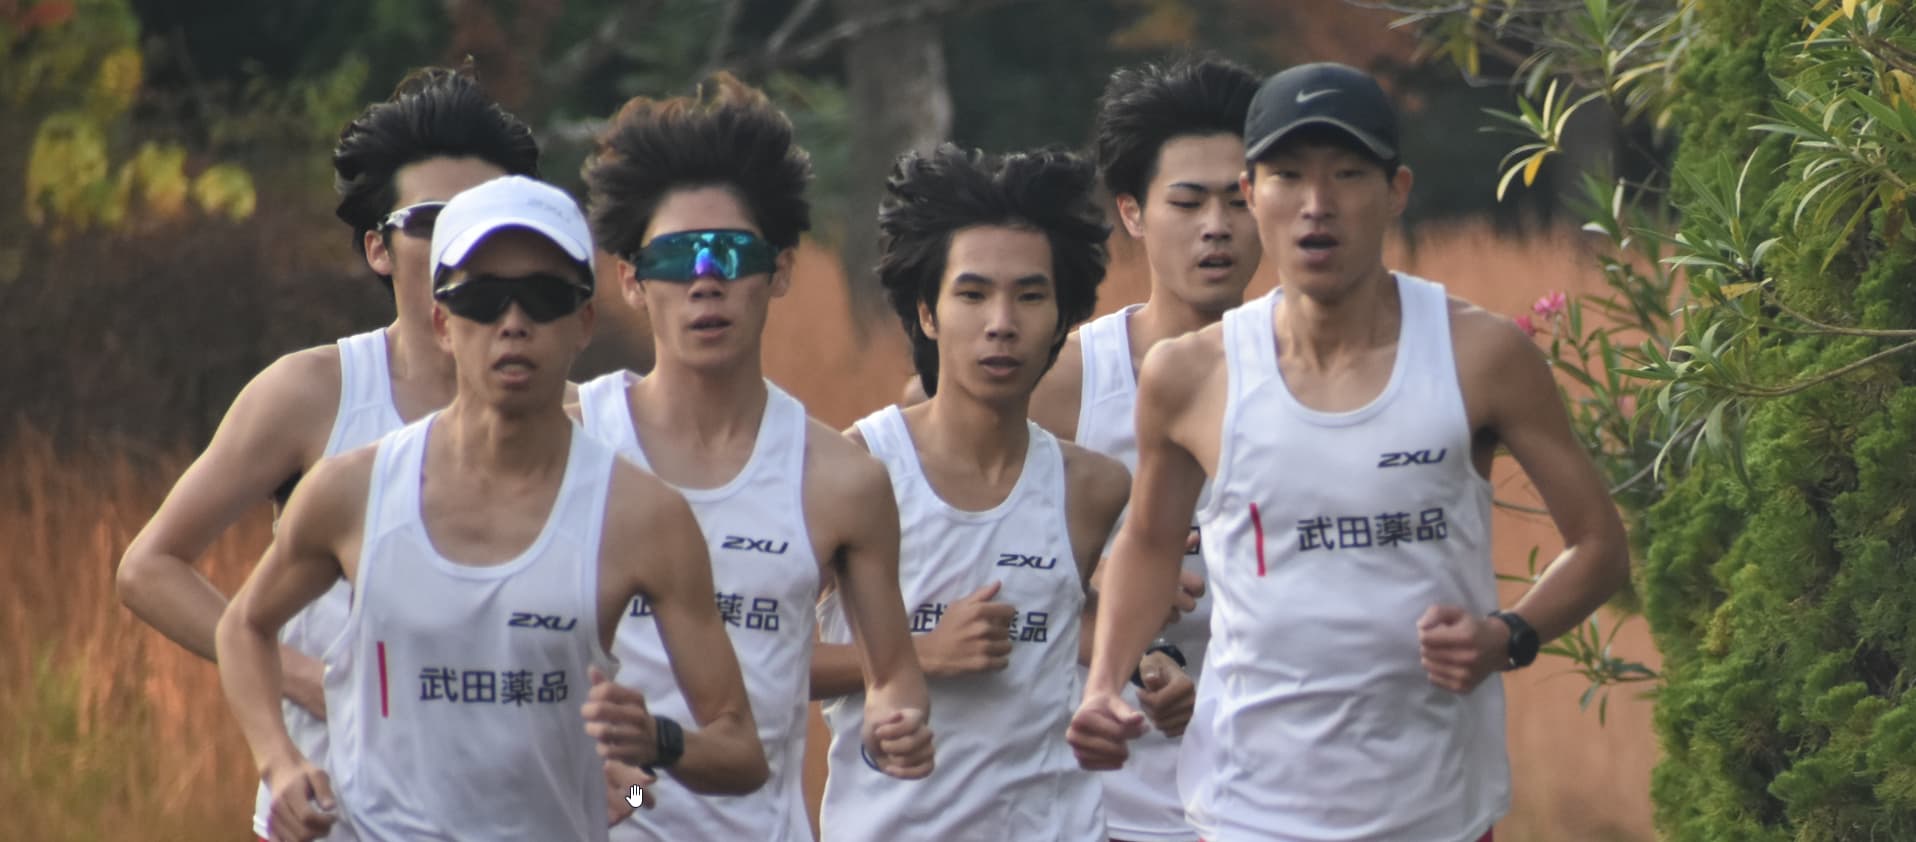 Group of men running